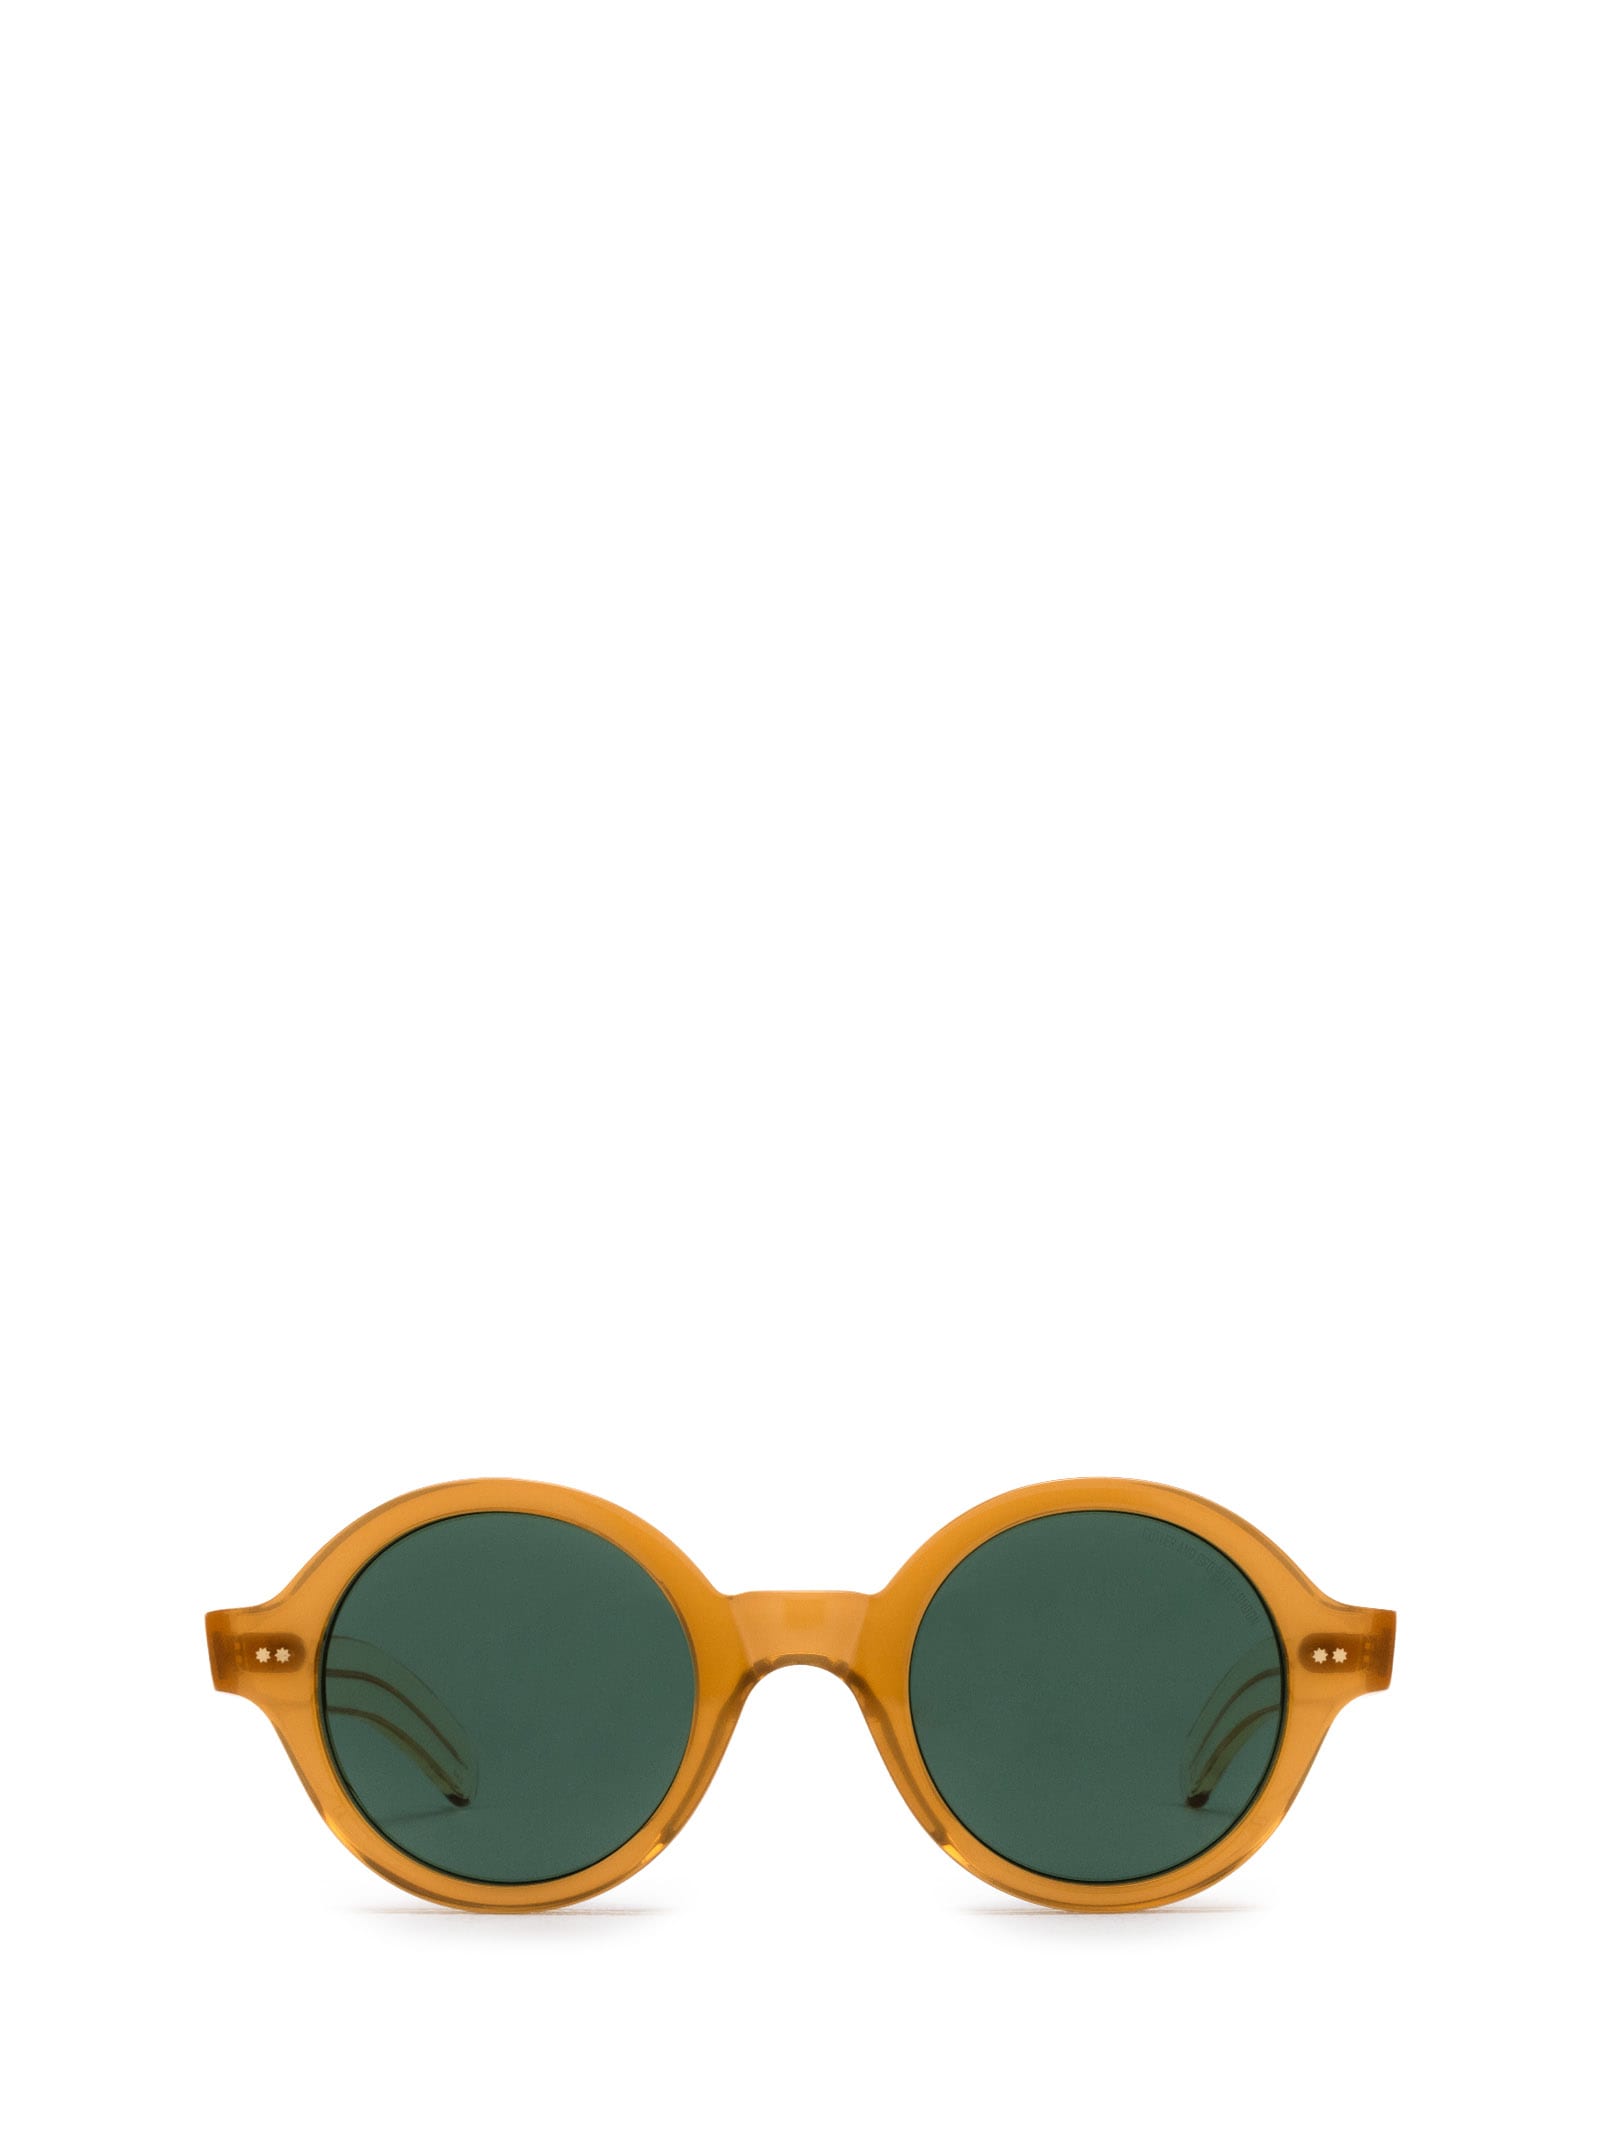 Cutler and Gross 1396 Sun Bi-layer Butterscotch Sunglasses